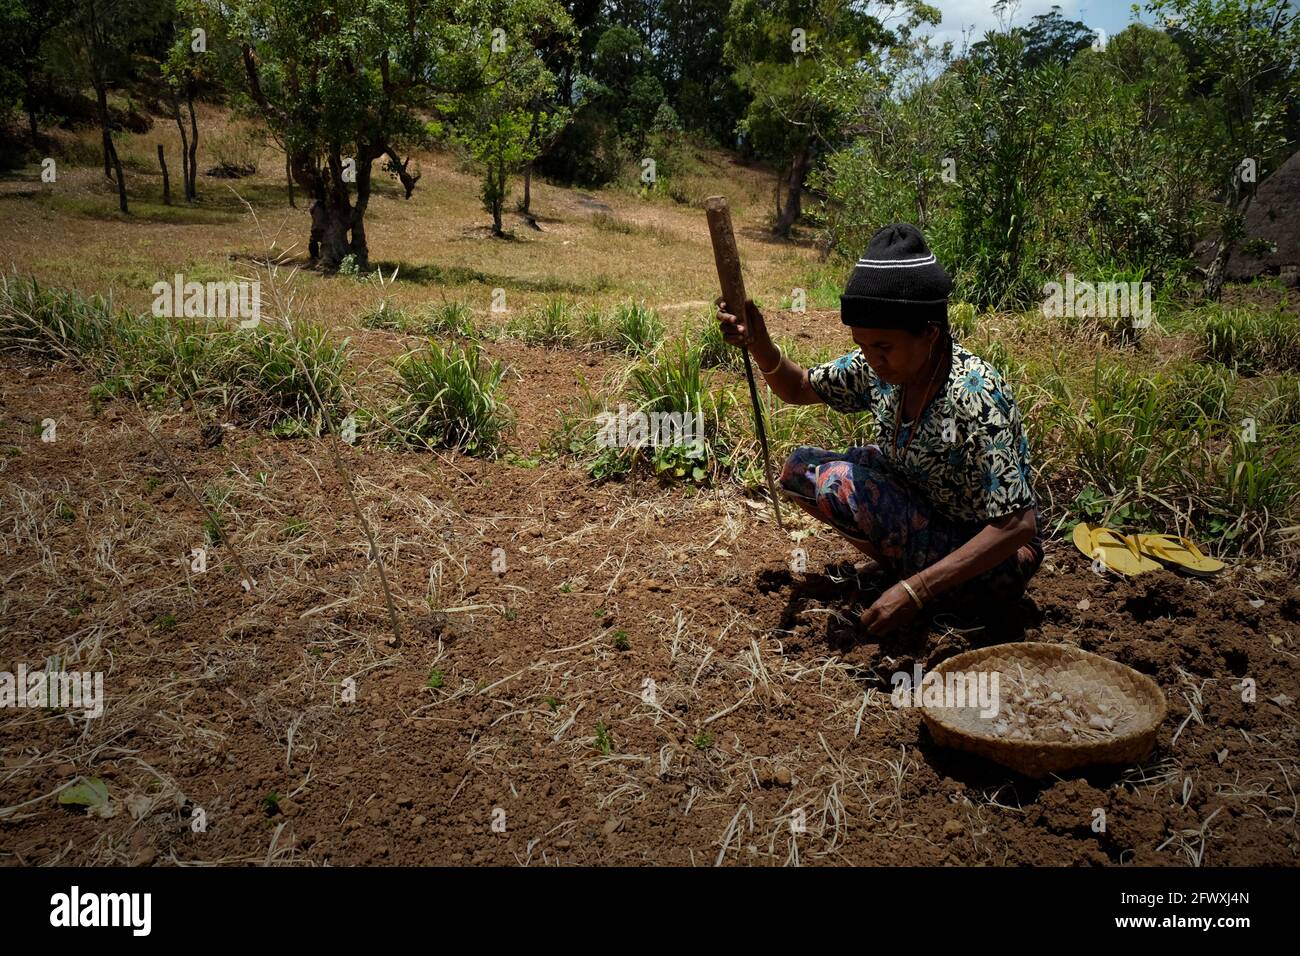 Yuliana Fuka lavora su terreni agricoli secchi nel villaggio di Fatumnasi, Timor centro-meridionale, Nusa Tenggara orientale, Indonesia. Gli agricoltori coltivano spesso terreni più vulnerabili alla siccità e a eventi atmosferici anomali, secondo una valutazione scientifica del 2021 incentrata sul rischio climatico, pubblicata dal Gruppo della Banca Mondiale e dalla Banca Asiatica per lo sviluppo. Inoltre, gli agricoltori e le comunità più povere sono meno in grado di permettersi lo stoccaggio locale di acqua, le infrastrutture di irrigazione e le tecnologie per l’adattamento al cambiamento climatico, ha affermato il rapporto. Foto Stock